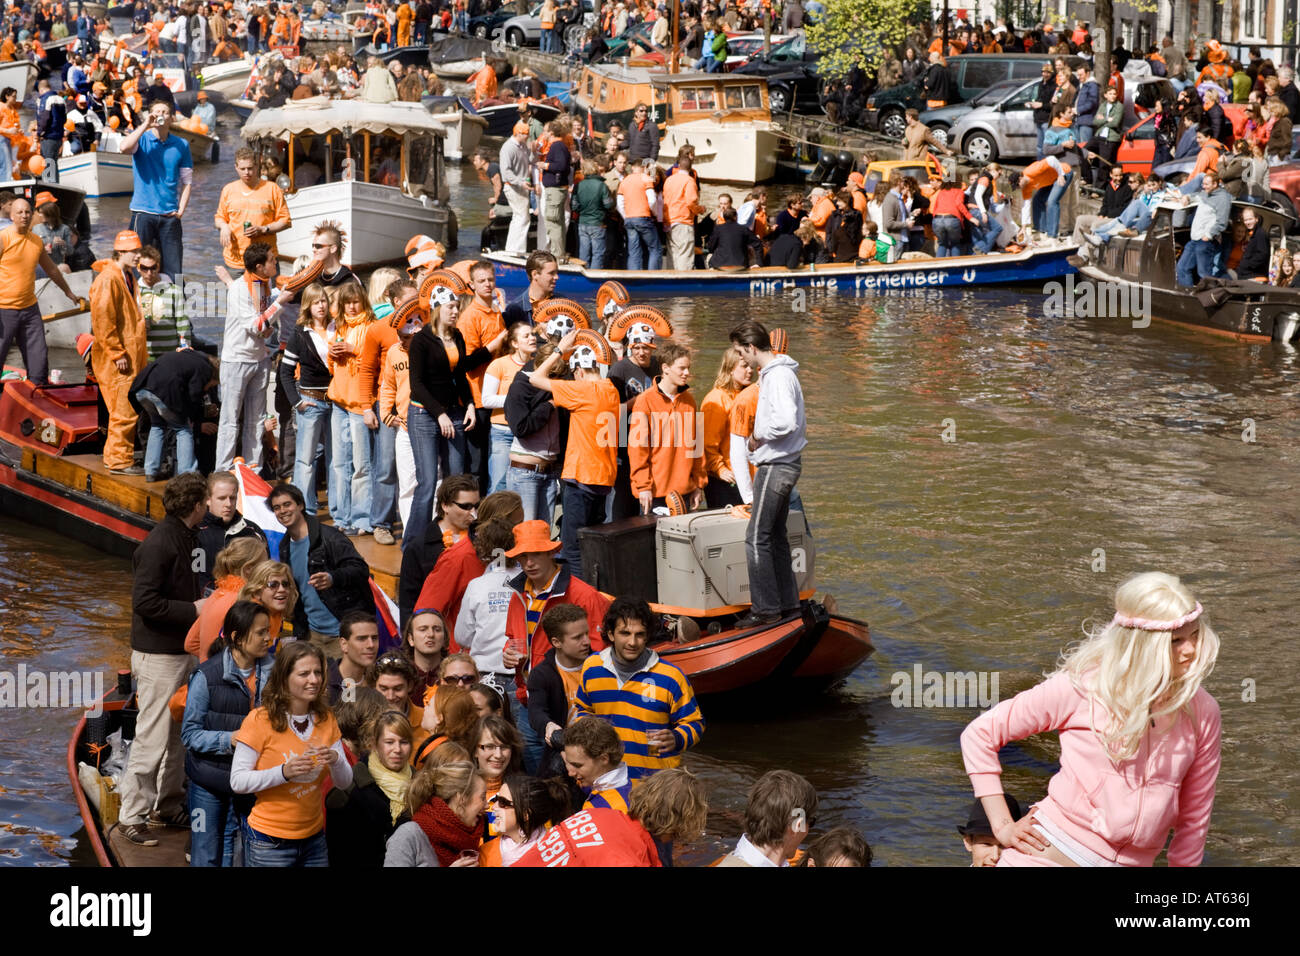 Gridlock naranja en los canales de Amsterdam, en la celebración del cumpleaños de la reina: la importantísima Koninginnedag. Foto de stock